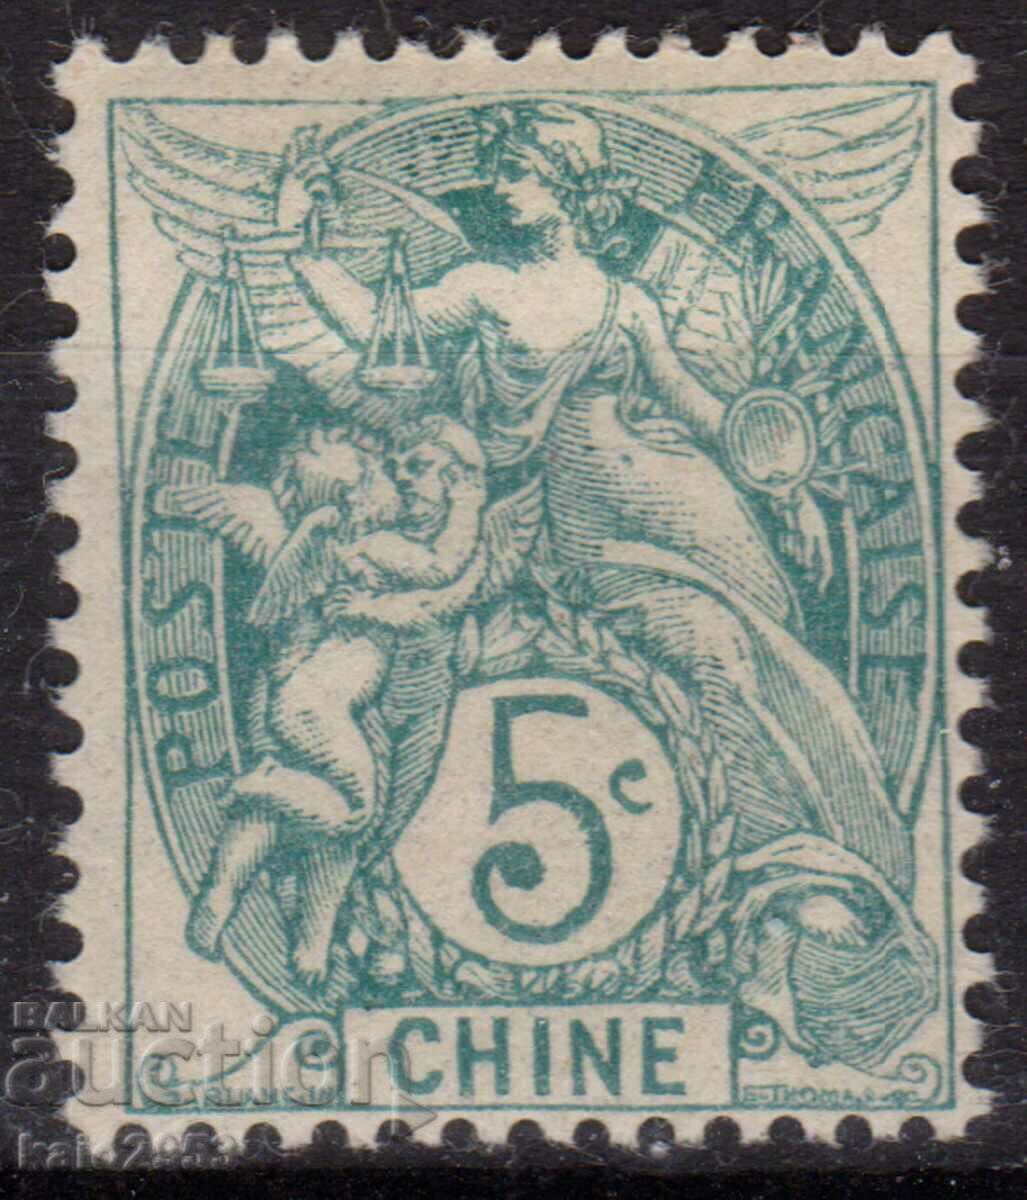 Γαλλία/Ταχυδρομείο στην Κίνα-1905-Colonial Allegory,MLH